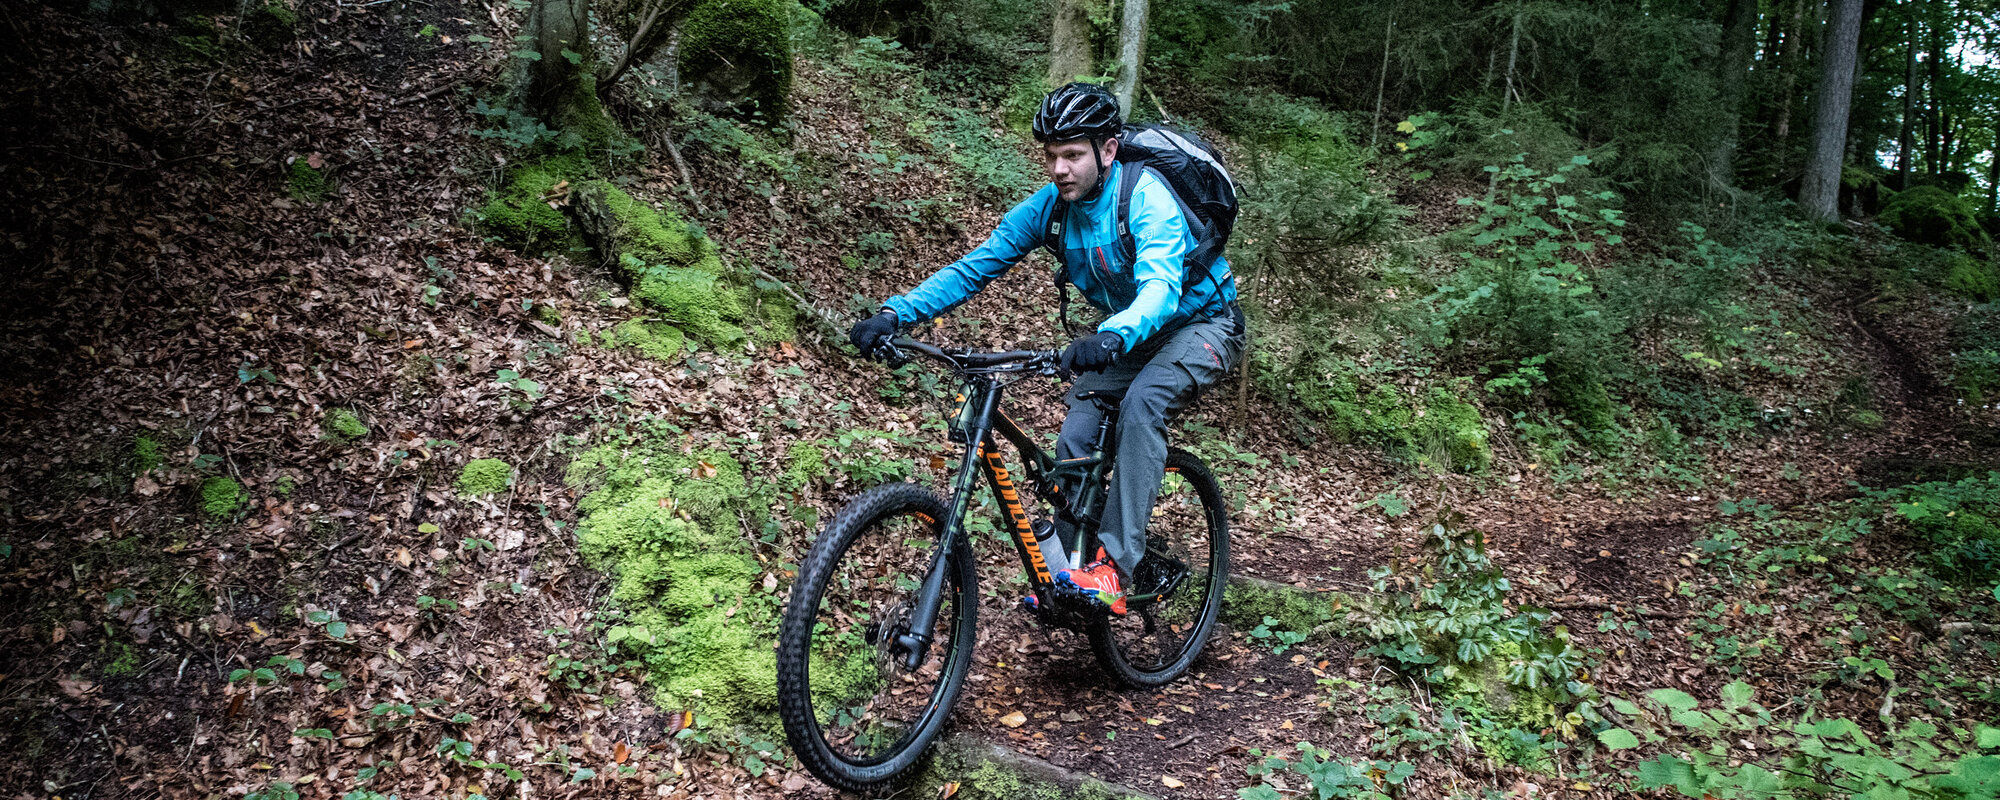 Ein Mann in blauer Jacke sitzt konzentriert auf seinem Fahrrad und fährt auf einem schmalen Pfad im Wald bergab.